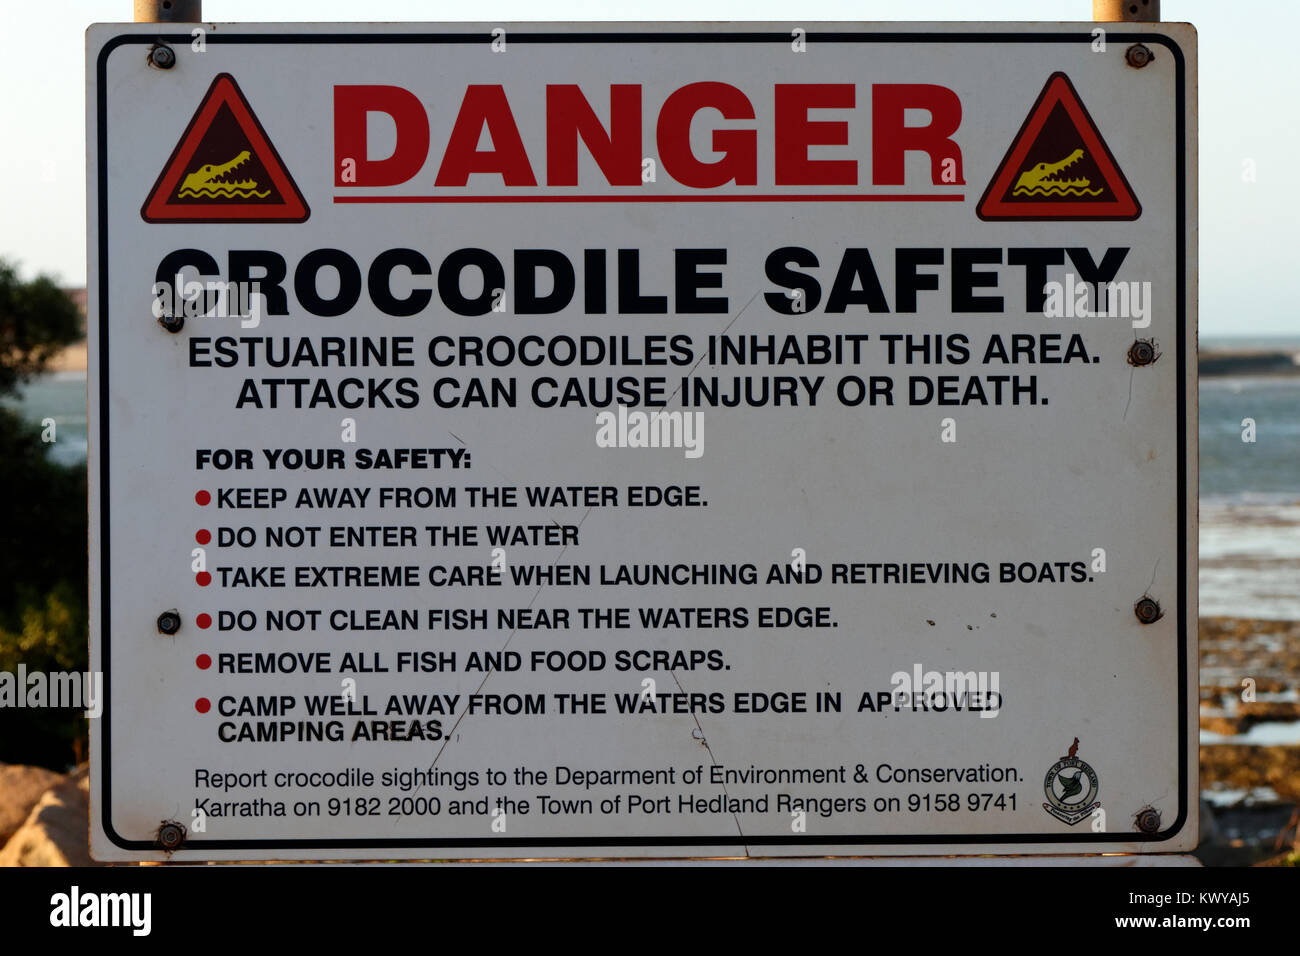 Crocodile safety warning sign, Port Hedland, Western Australia Stock Photo